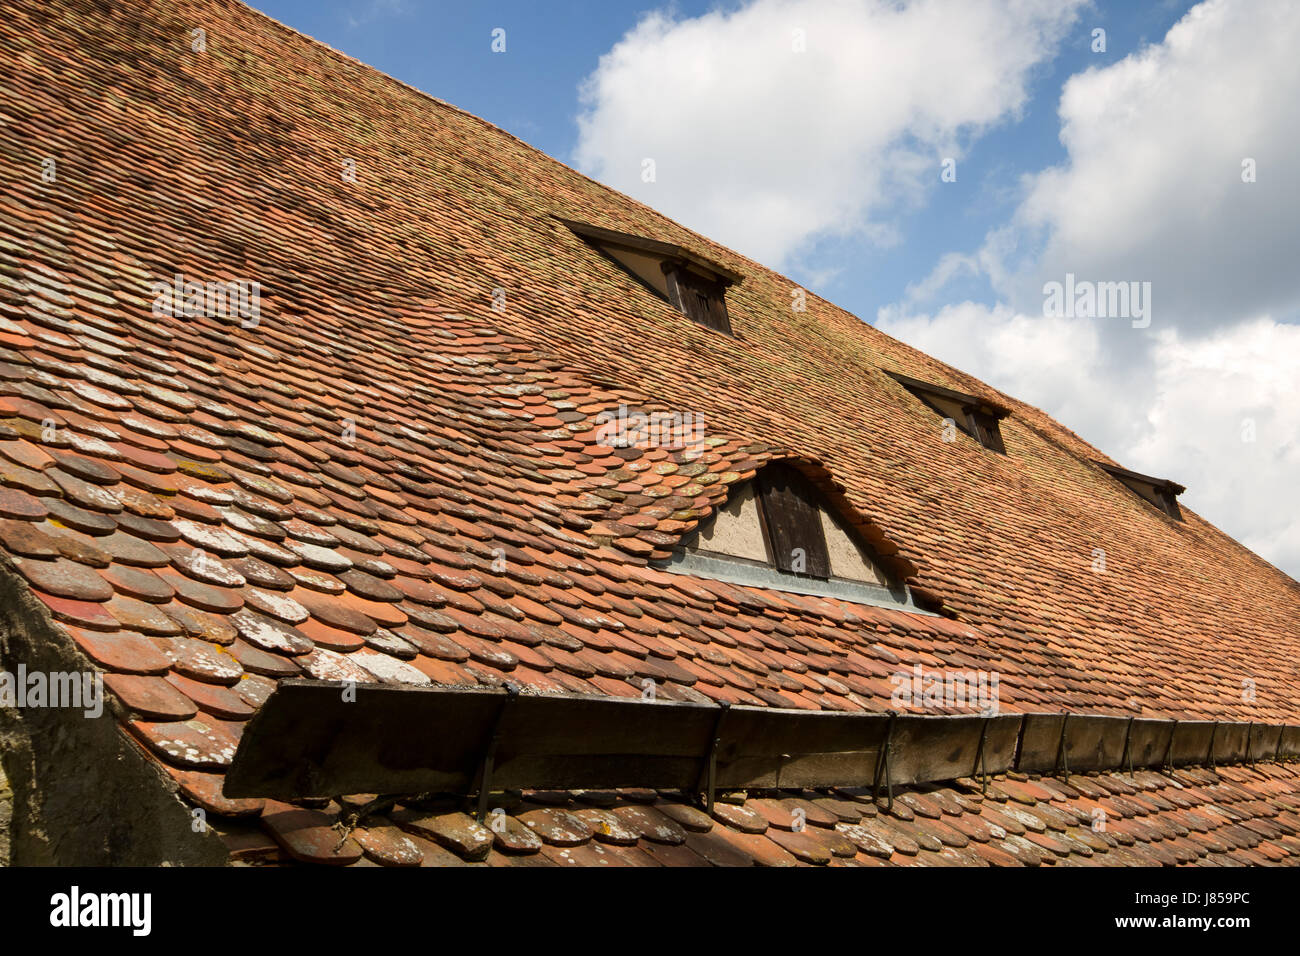 Hublot fenêtre historique lucarne à toit de tuiles anciennes tuiles panneau  de toit Photo Stock - Alamy